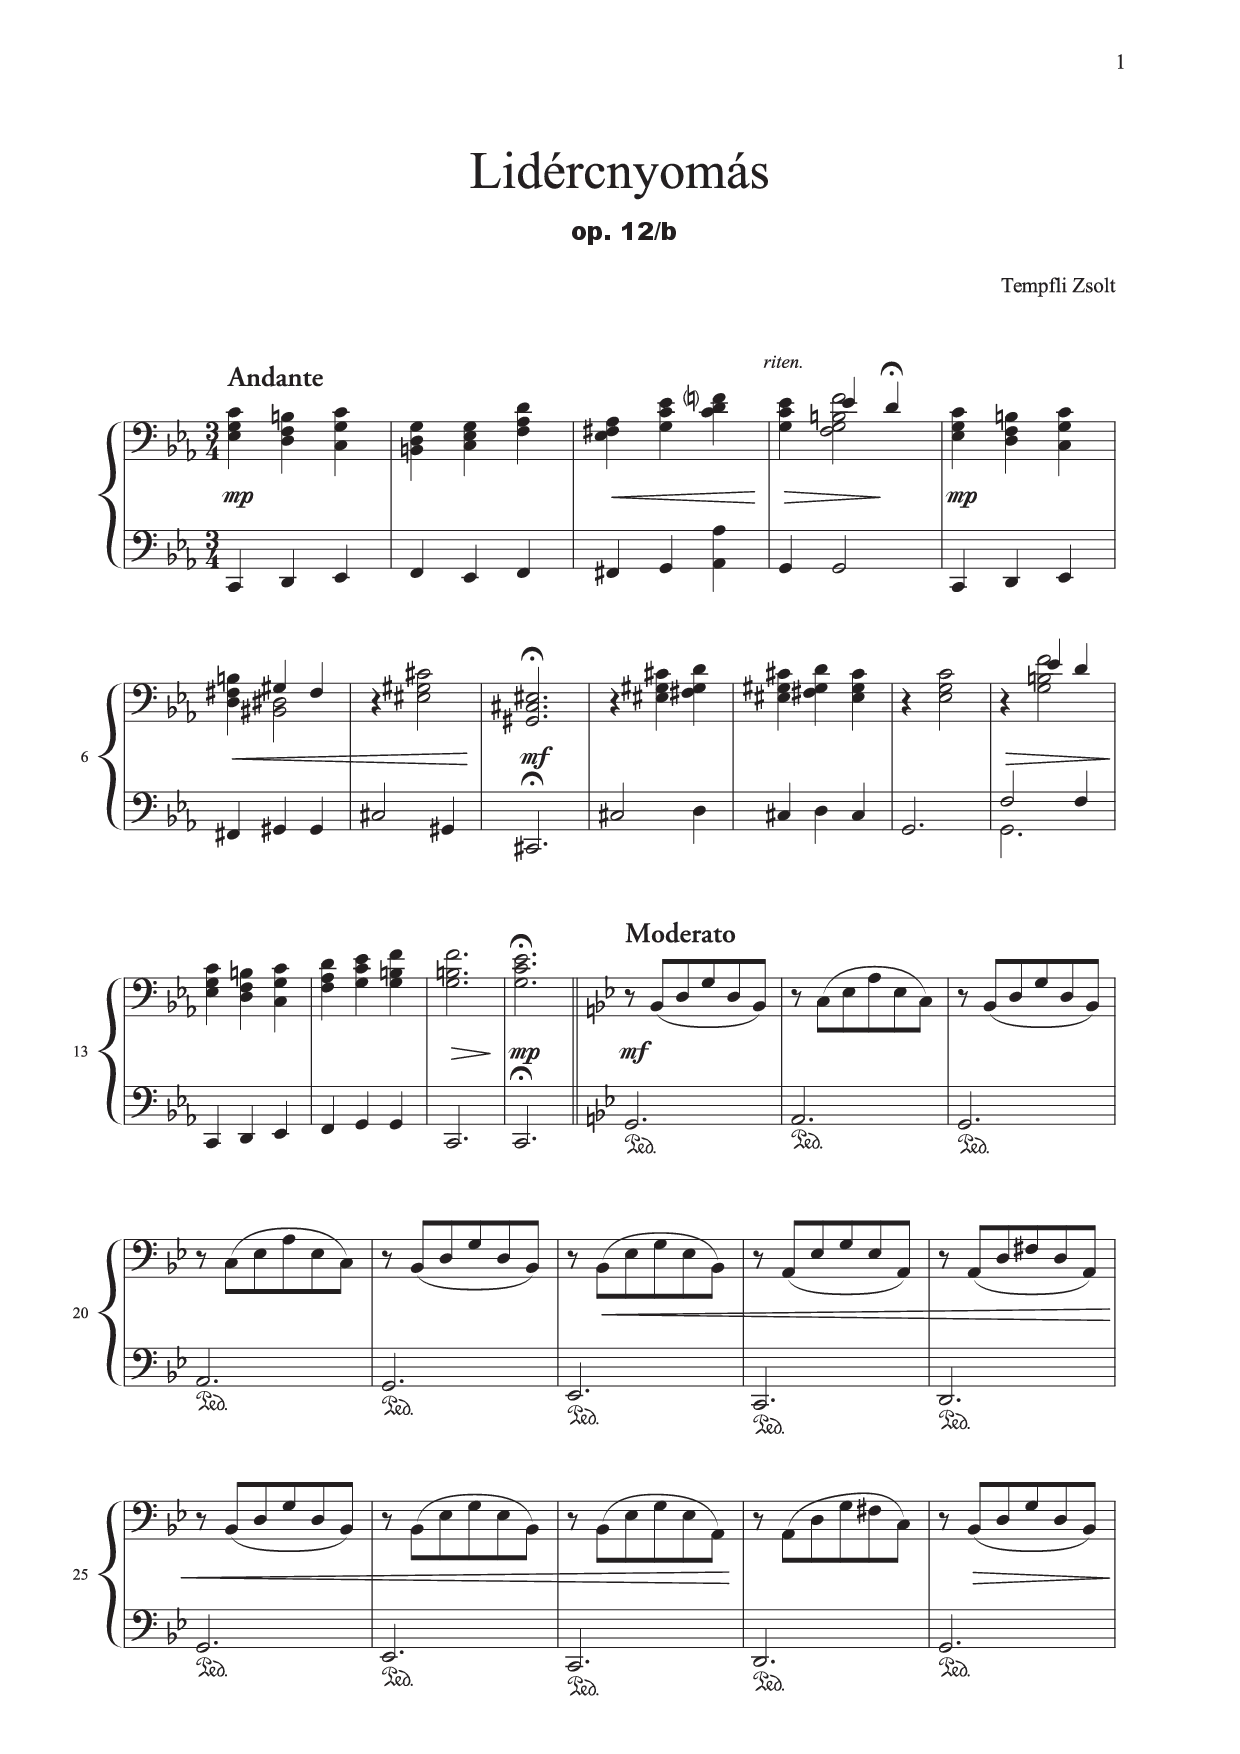 Tempfli Zsolt: A Lidércnyomás no. 2 zongorára, op. 12